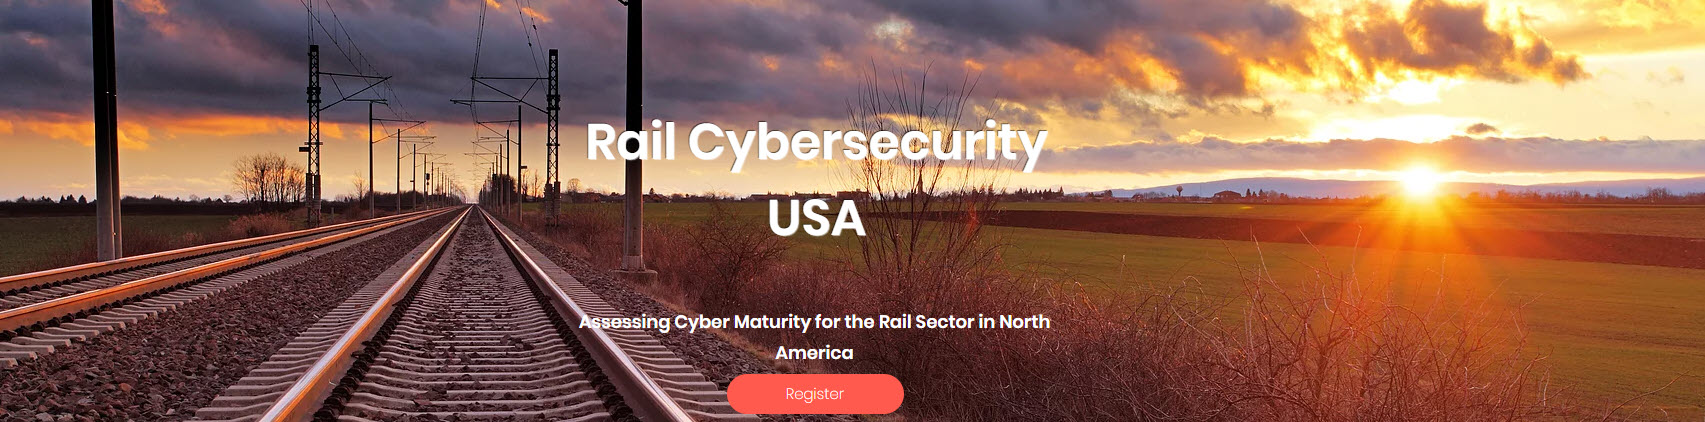 Cyber rails USA 2021